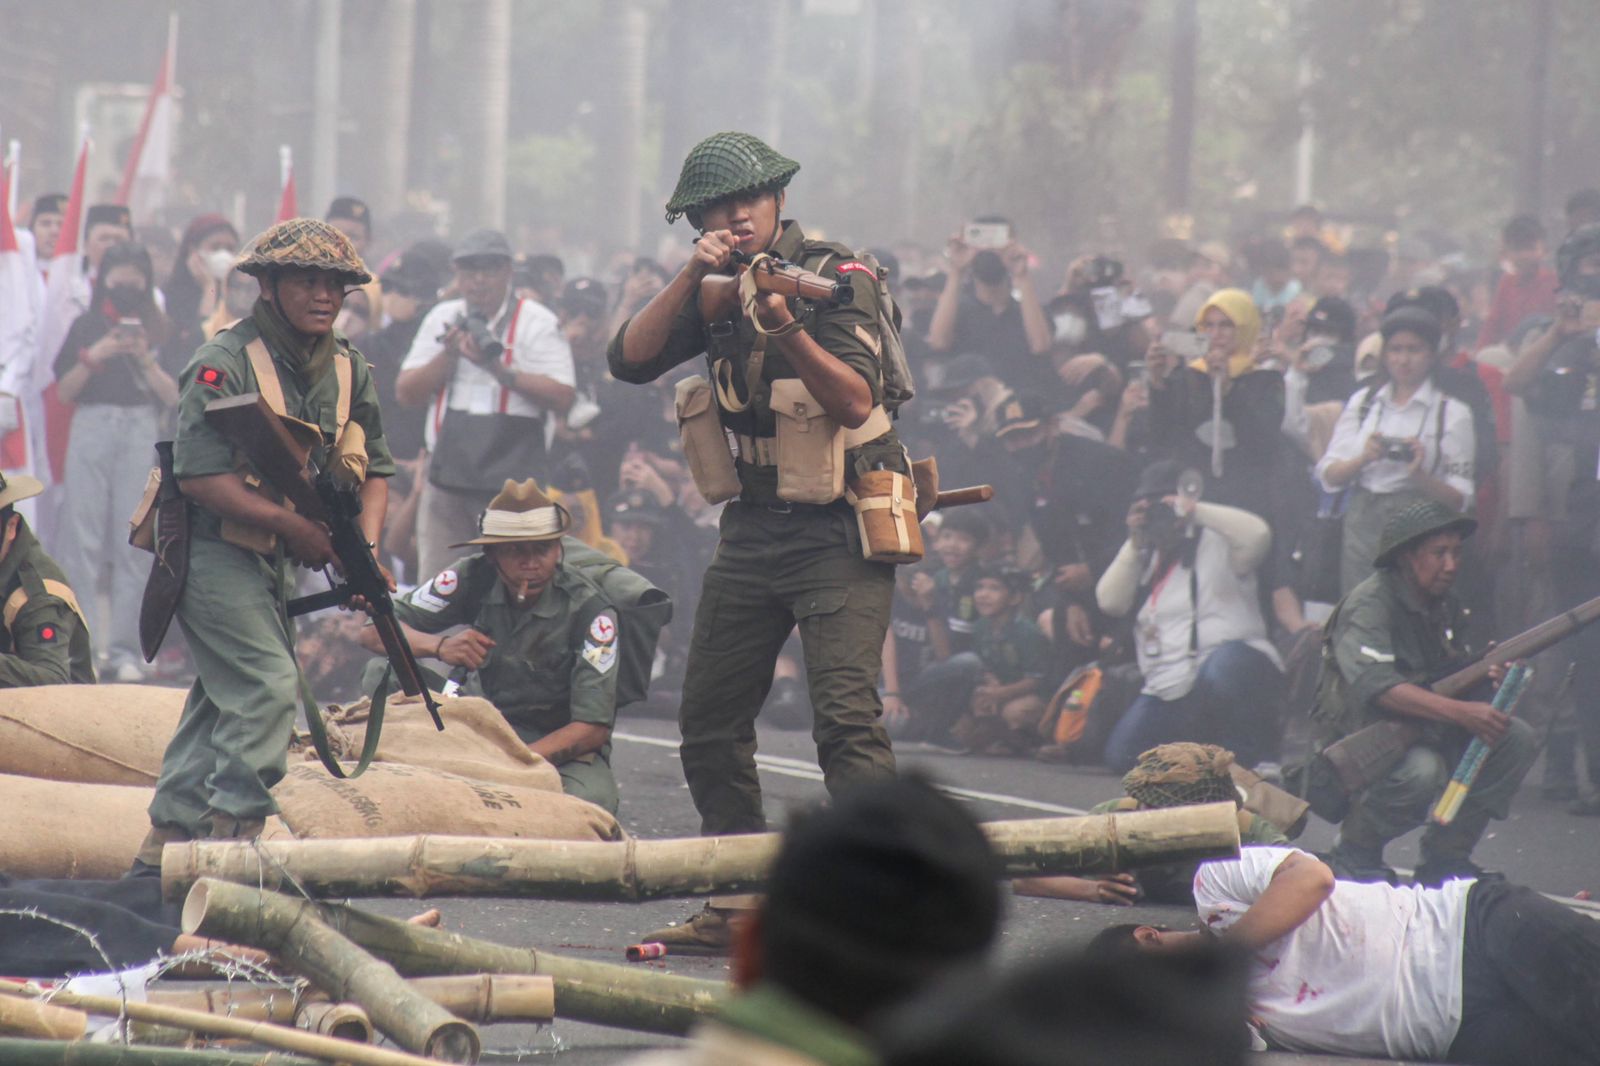 Adegan perang menggambarkan Tentara Indonesia yang mampu mendominasi medan tempur, dan membuat Tentara Sekutu terdesak.